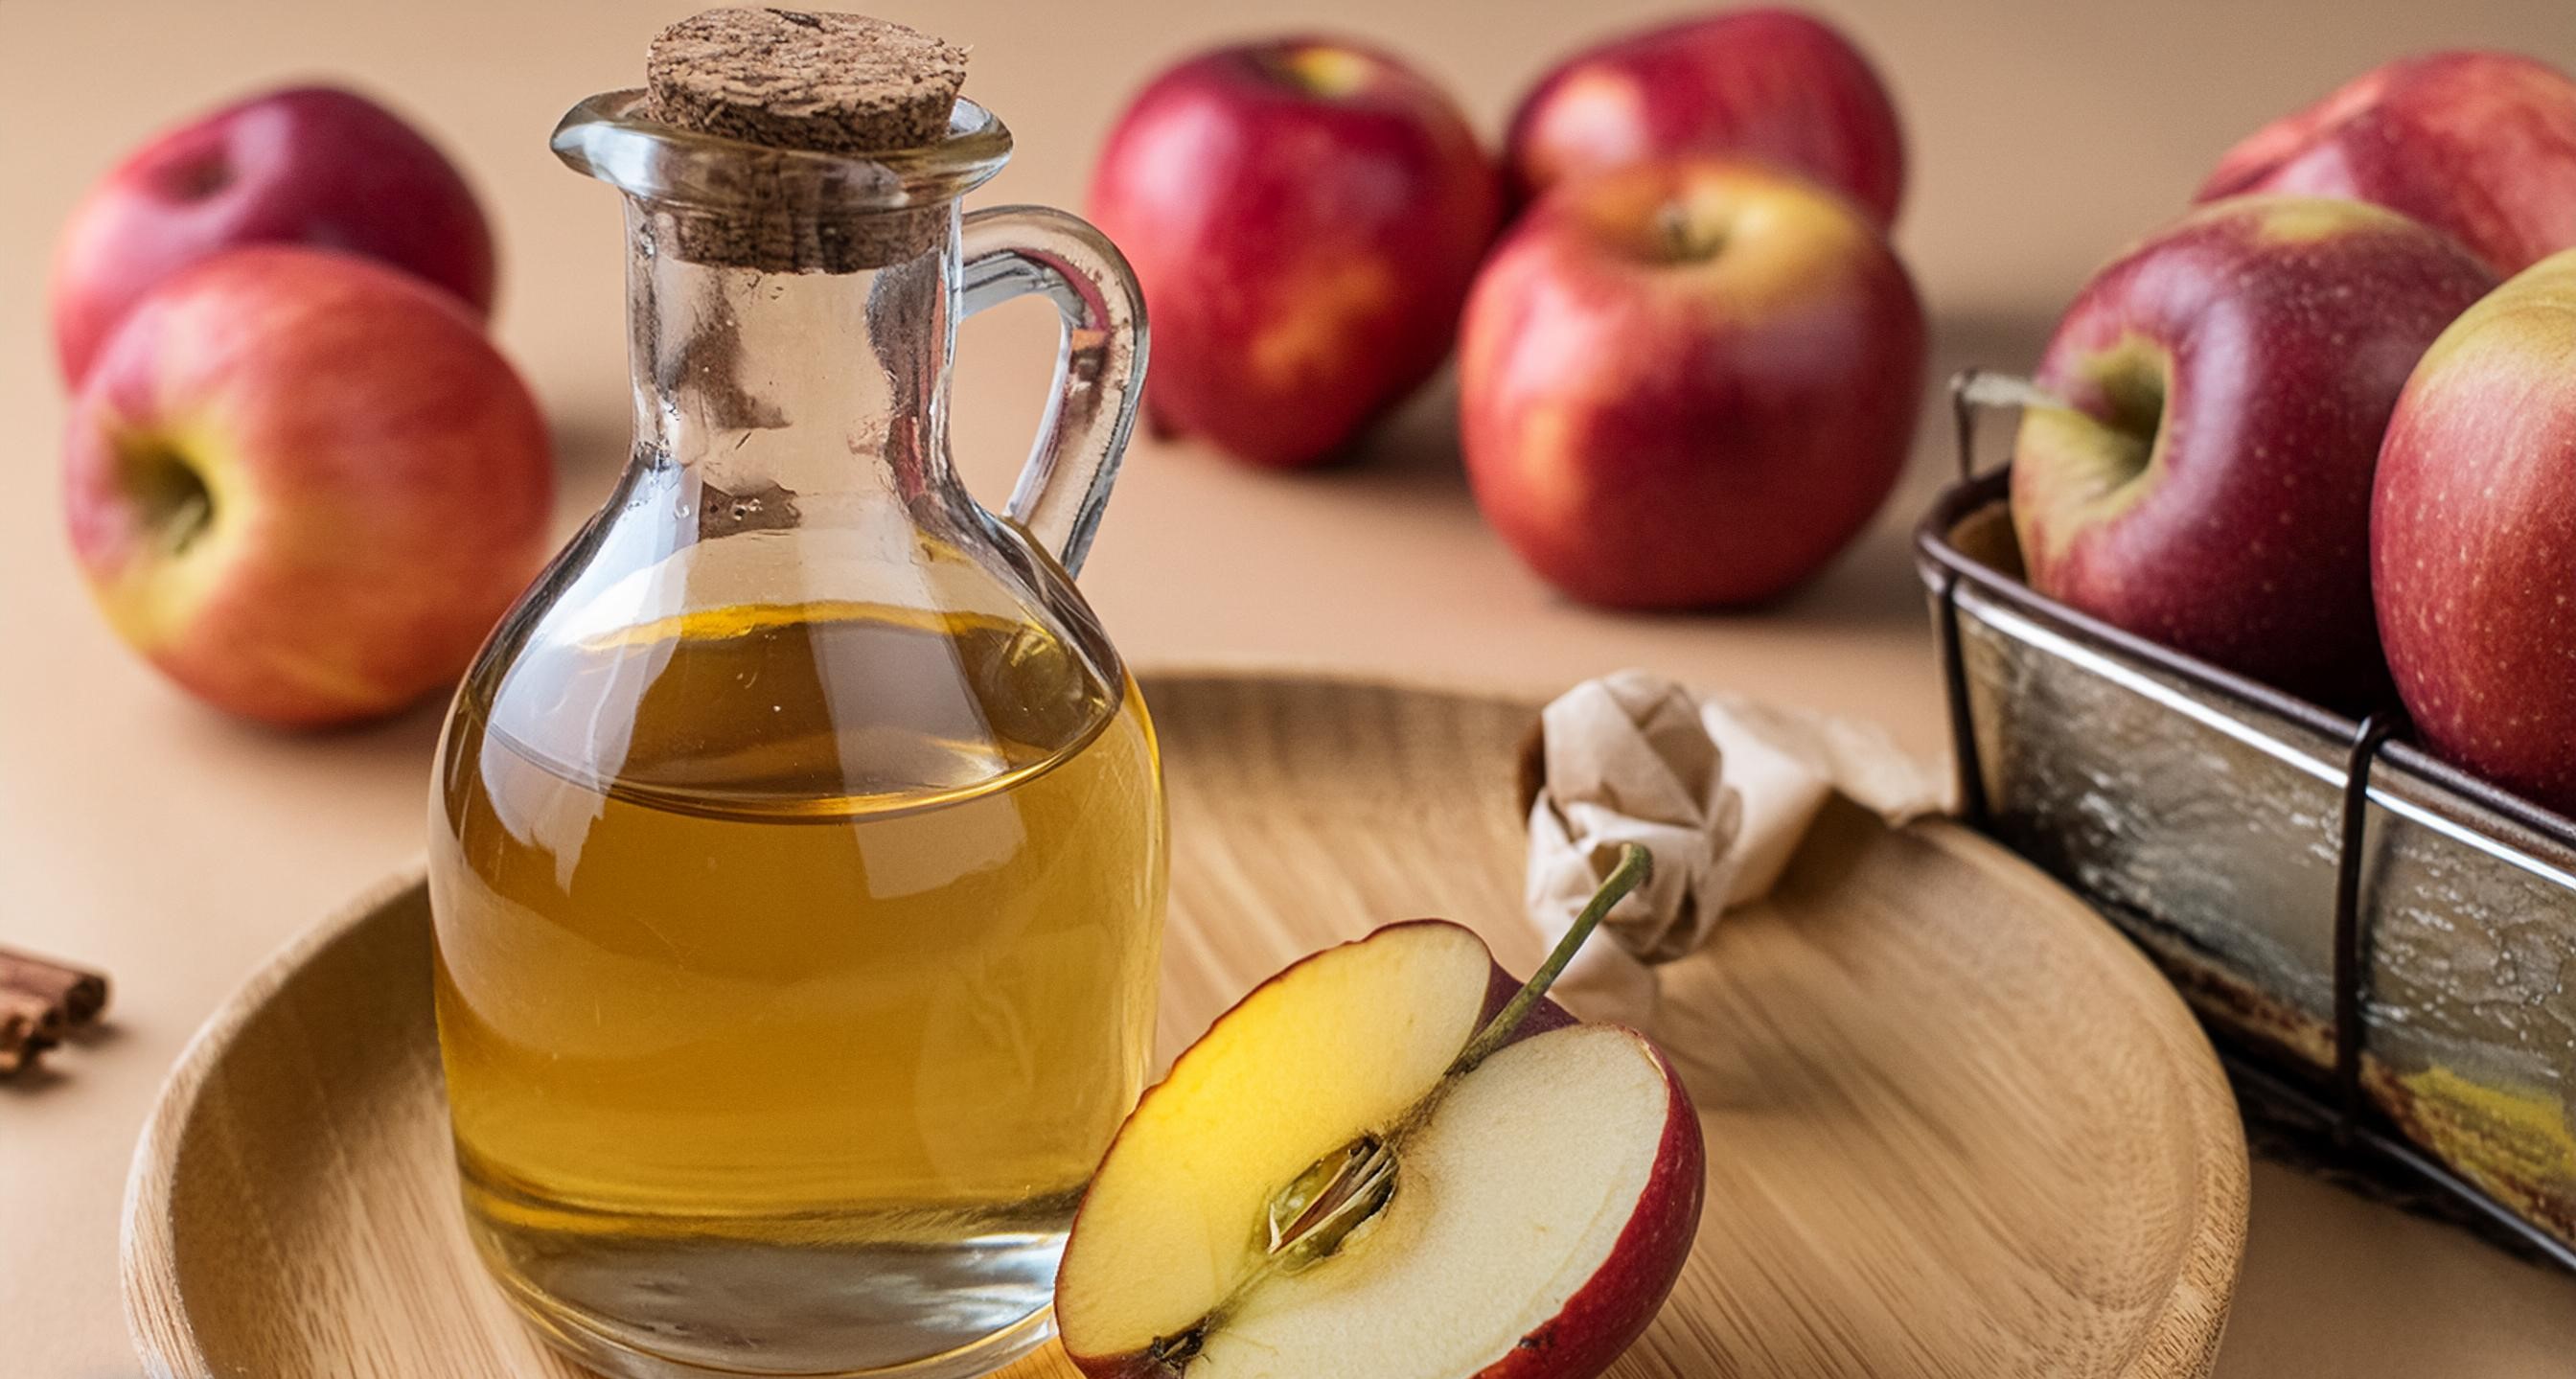 Apple cider vinegar for acne